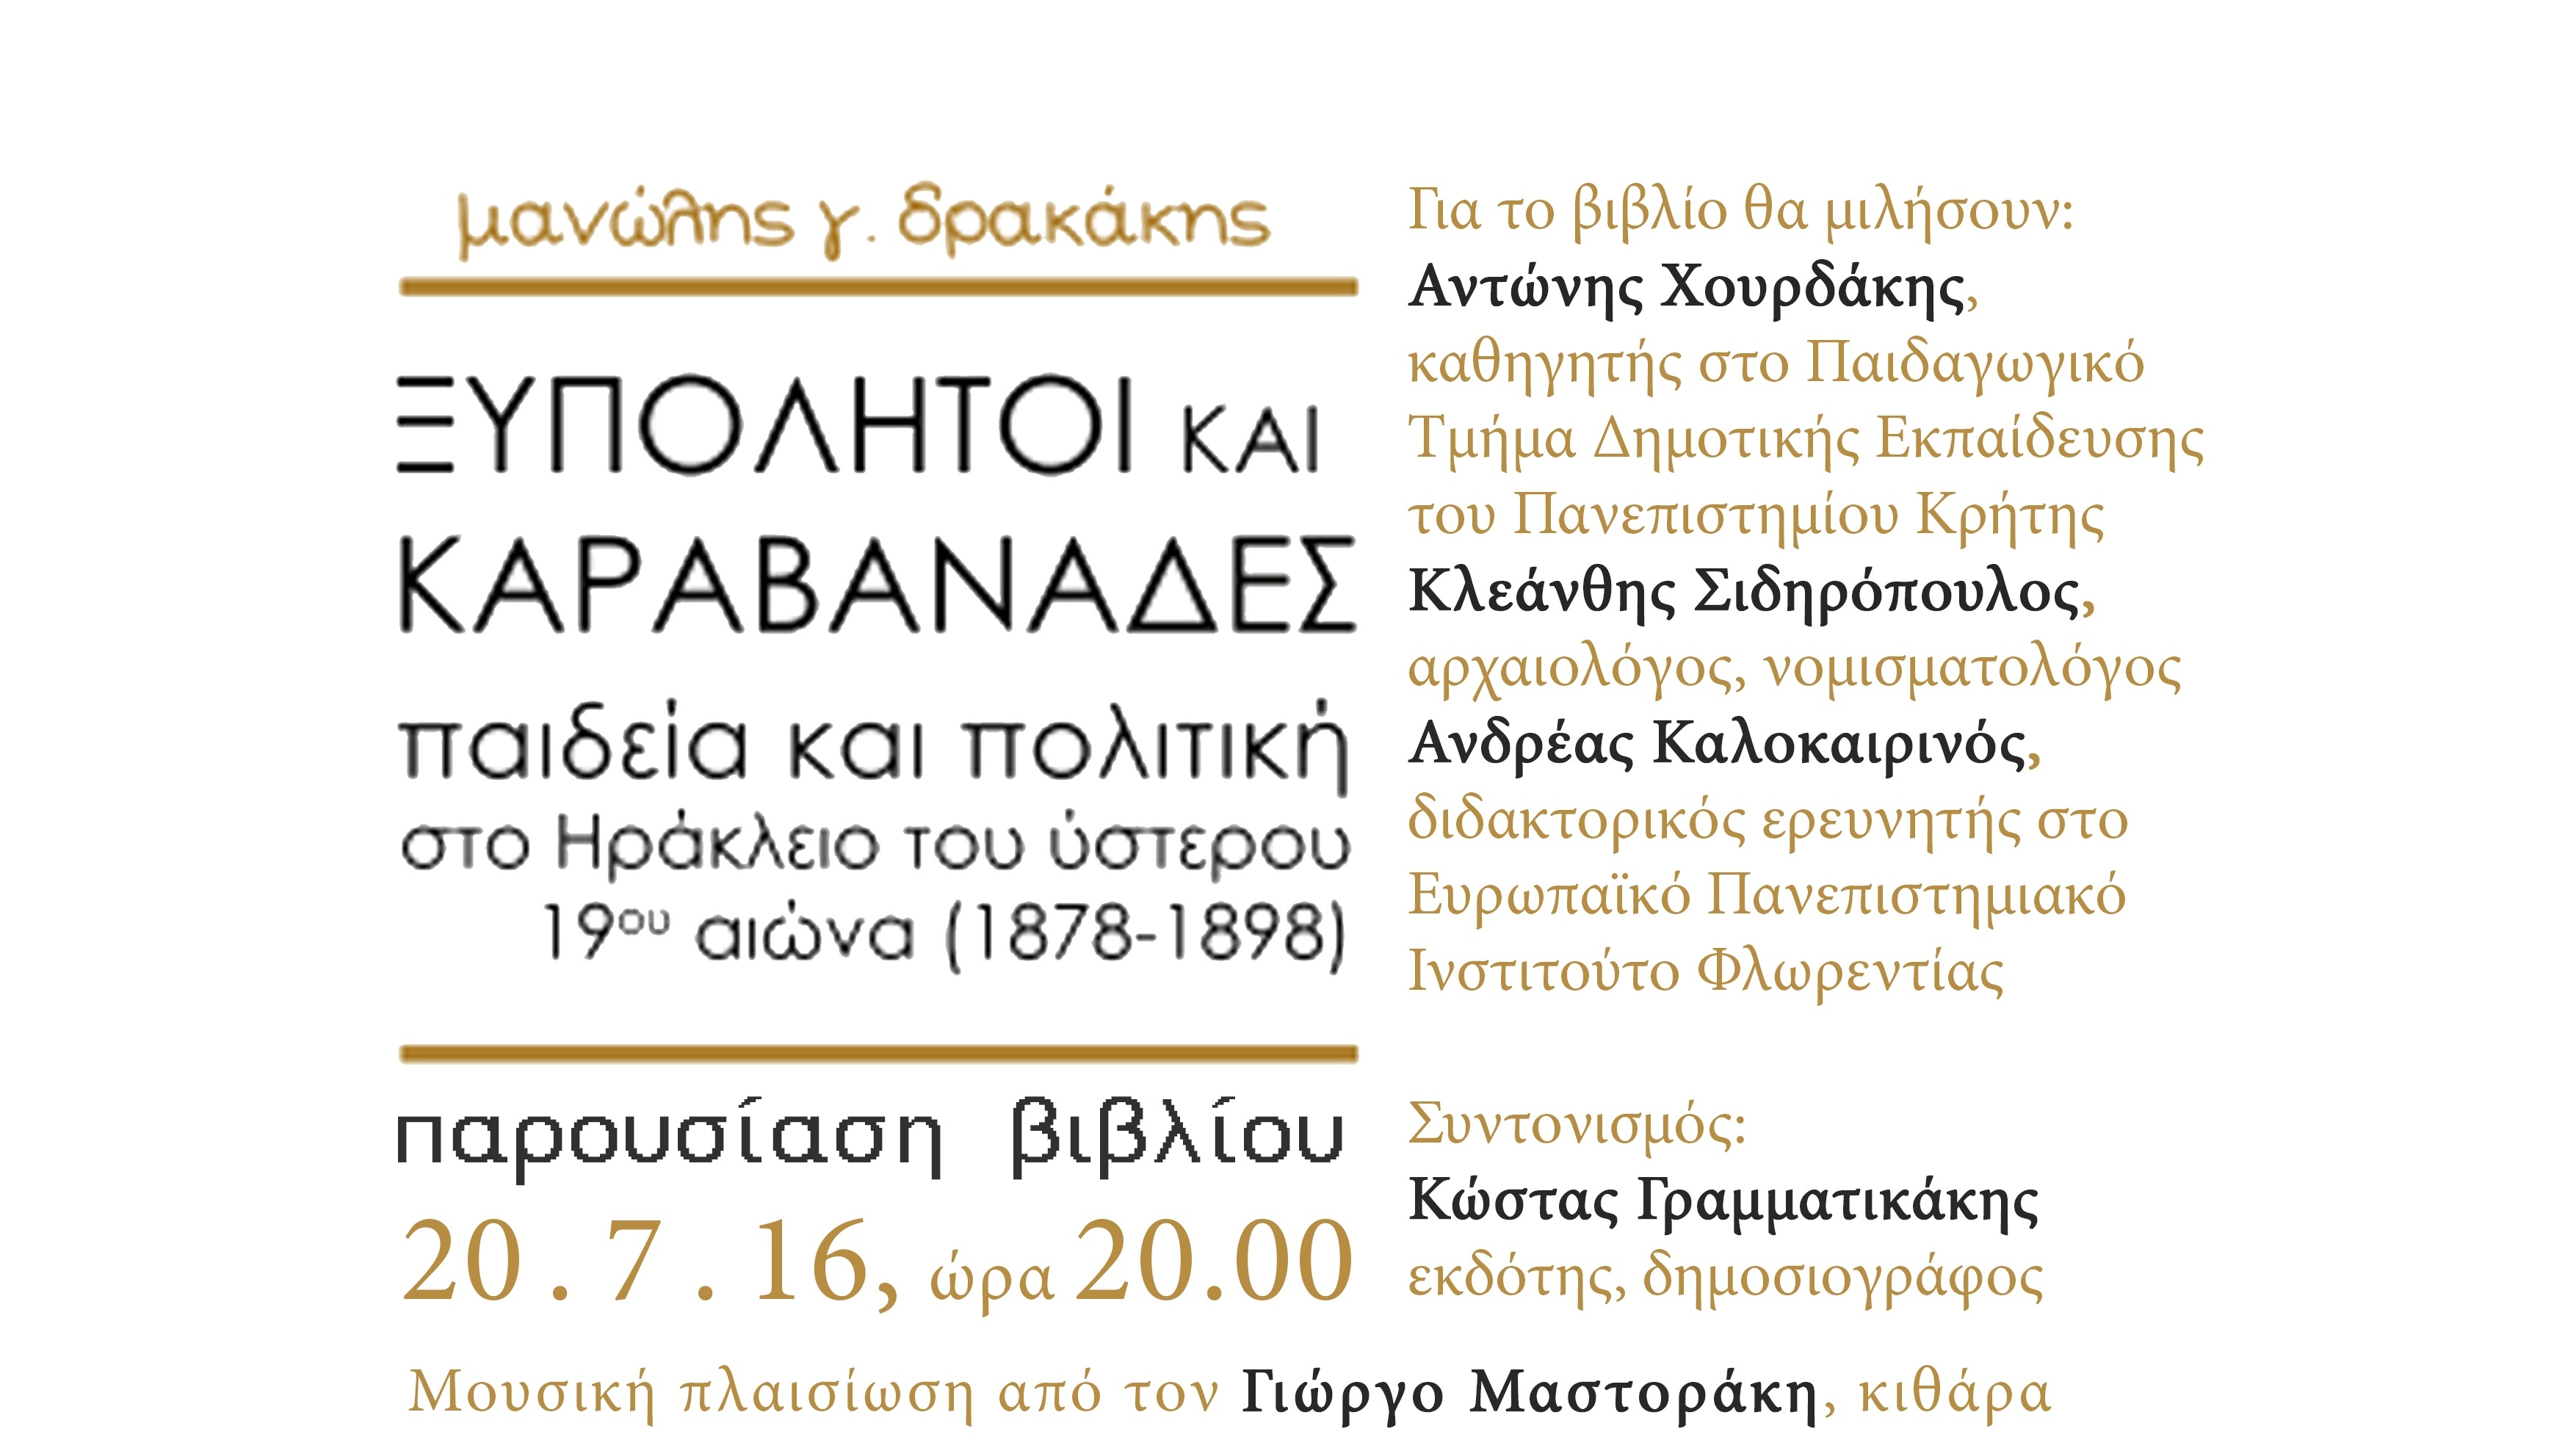 Παρουσίαση βιβλίου του Μανόλη Δρακάκη στο Ιστορικό Μουσείο Κρήτης